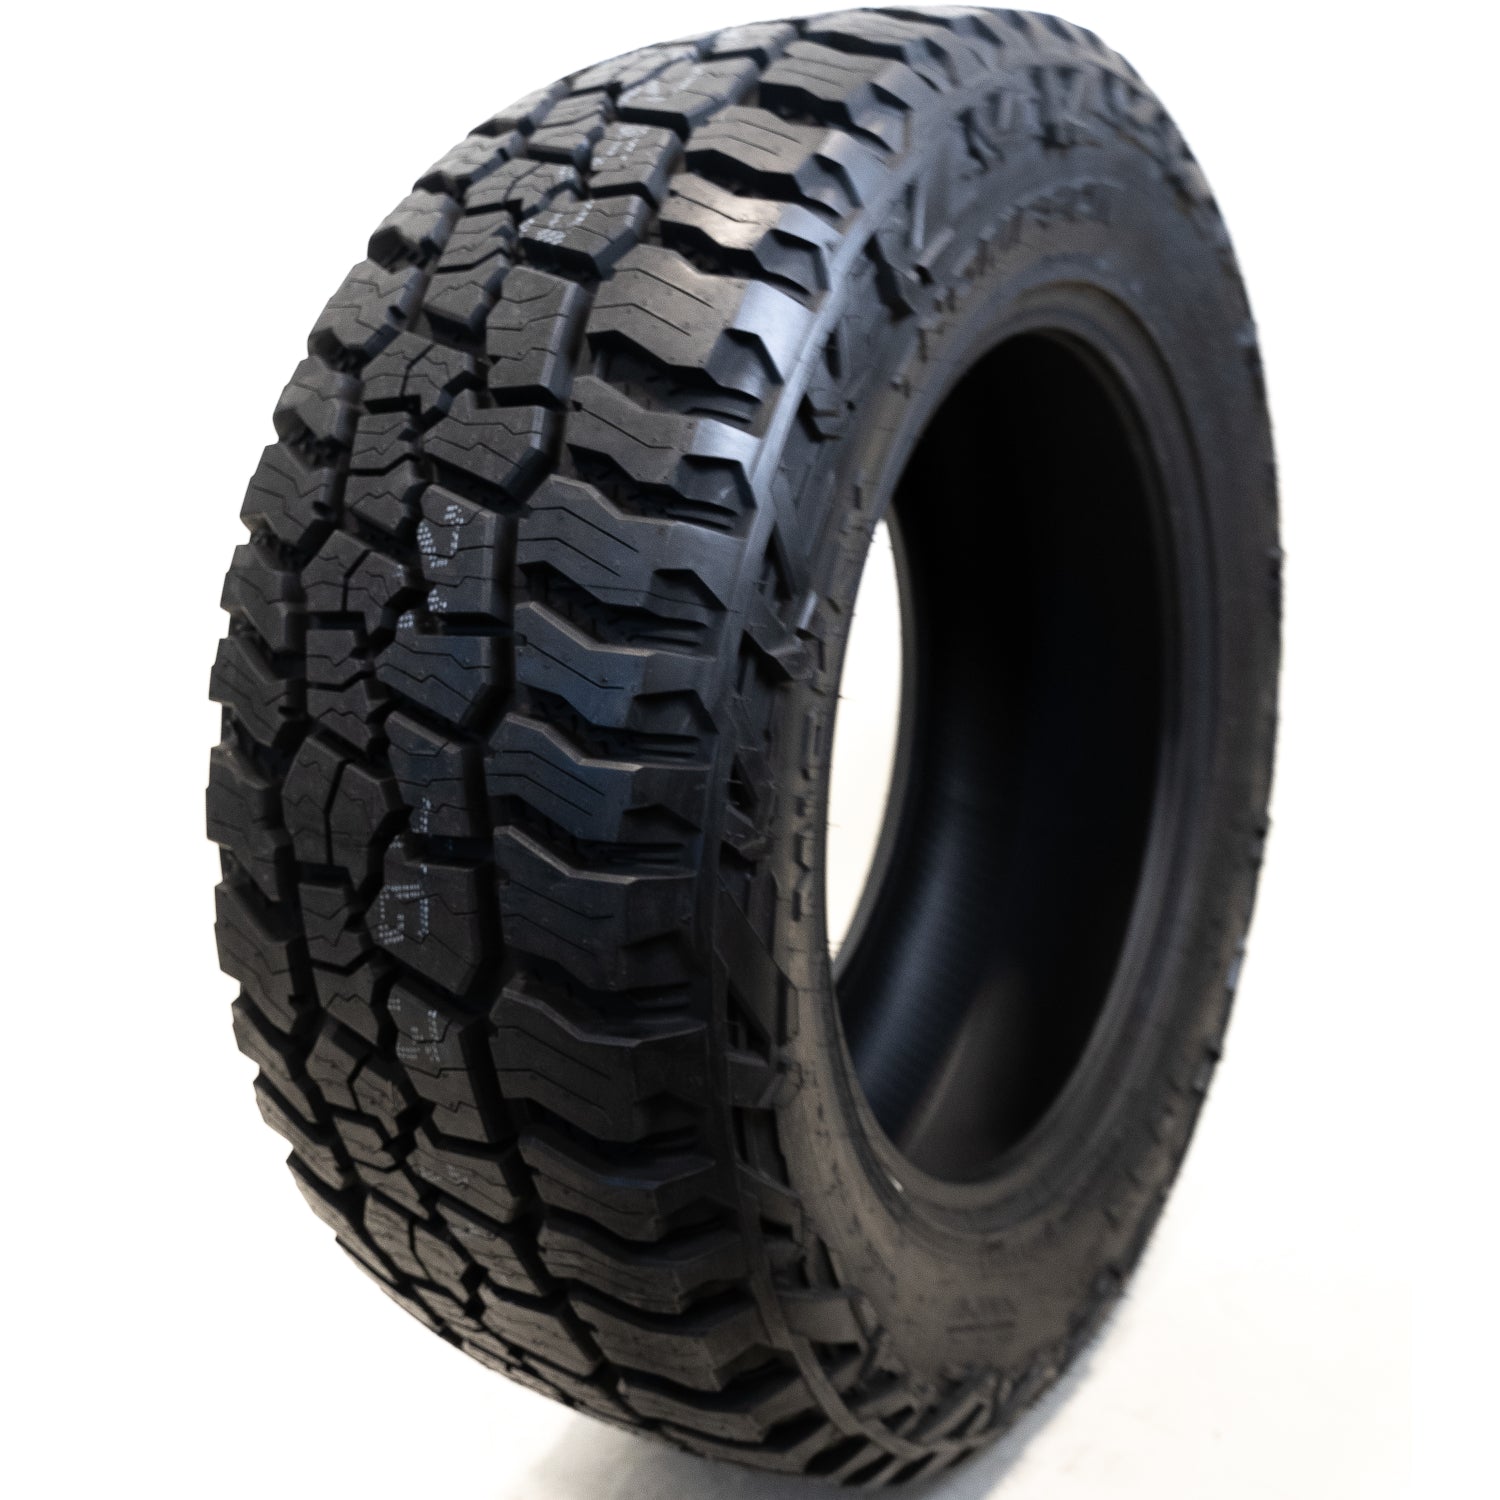 MICKEY THOMPSON BAJA BOSS A/T 265/70R16 (30.8X10.4R 16) Tires